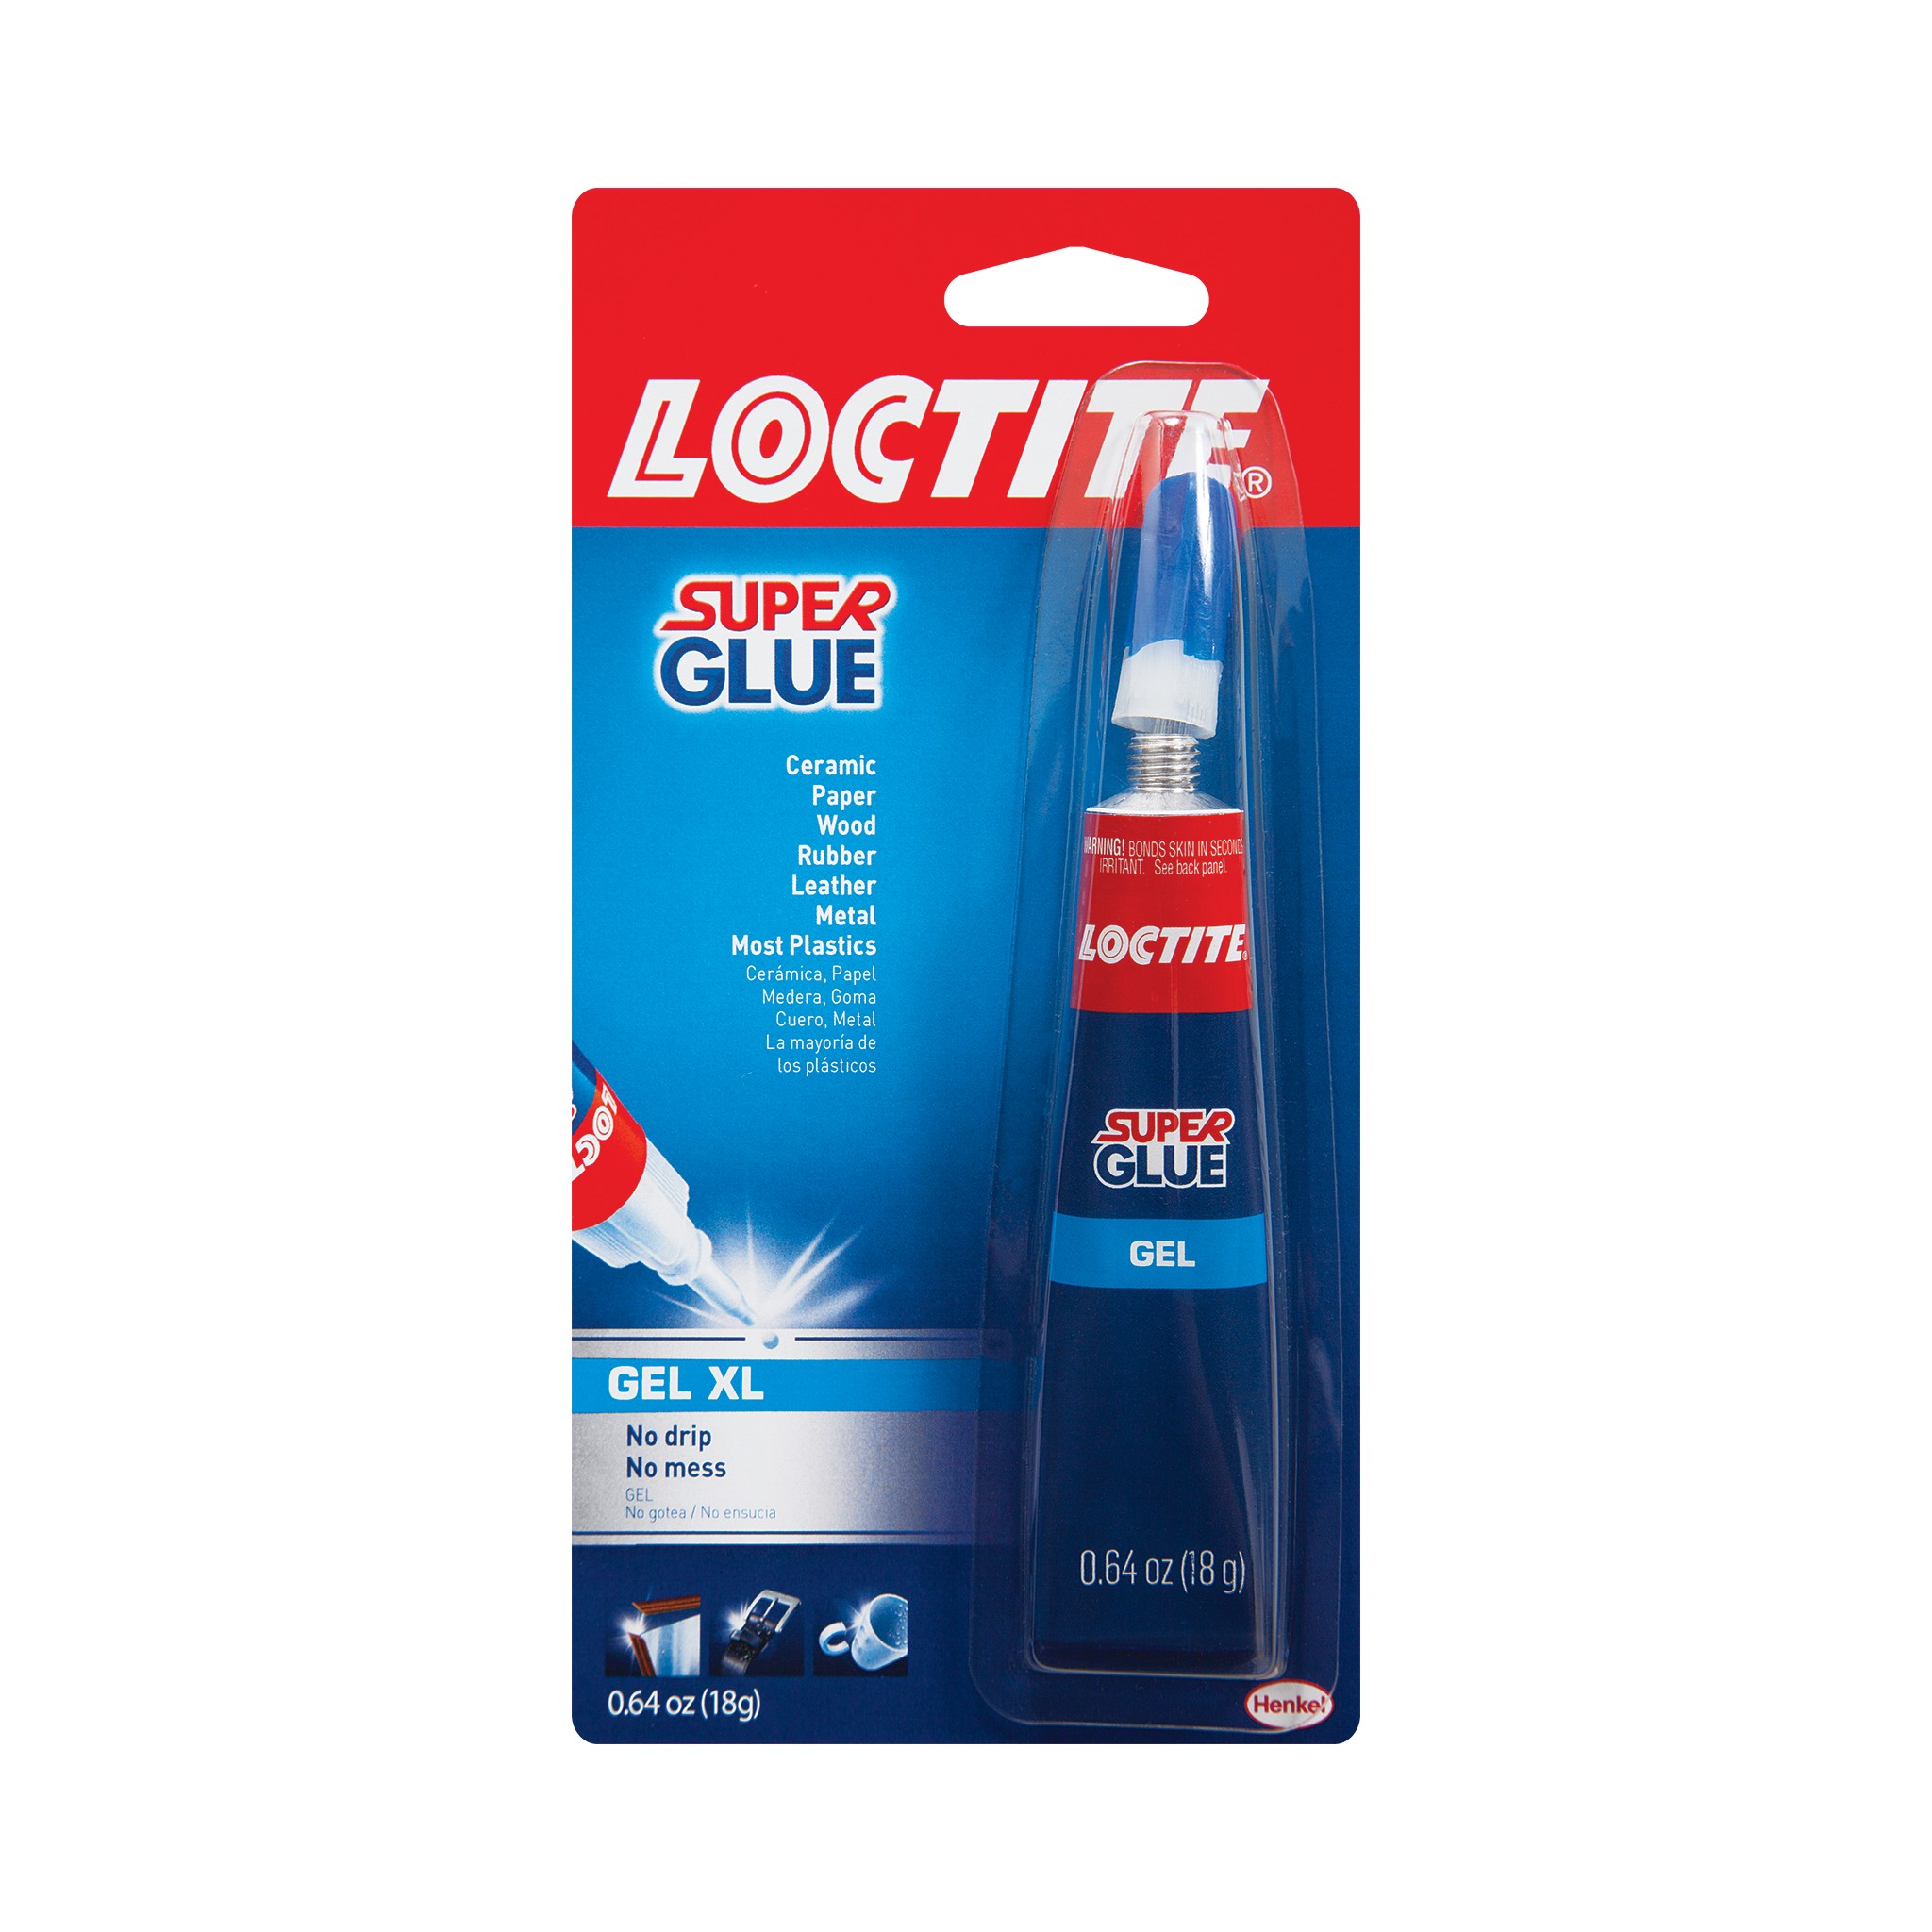 LOCTITE Super Glue - Mini Trio Adhesive - 3 x 1g Tubes